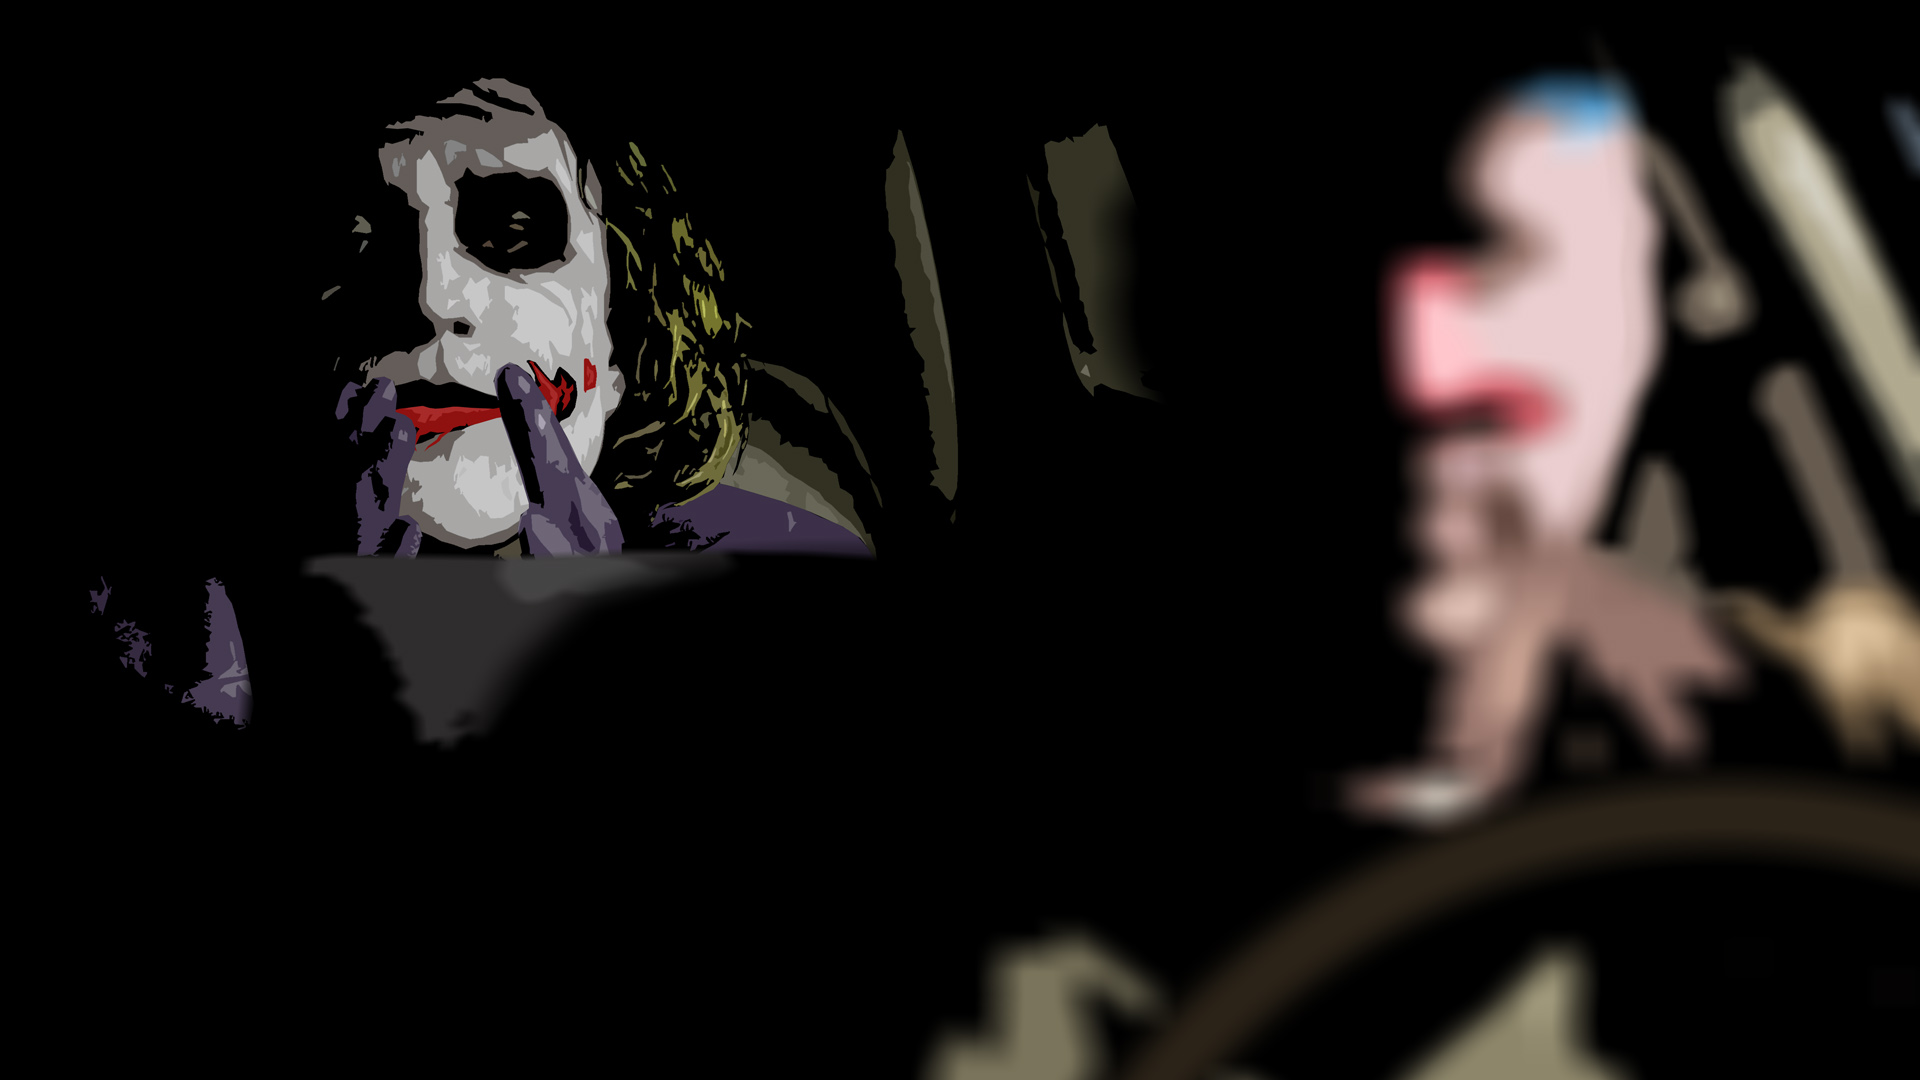 Обои на телефон Джокер лежит на машине.